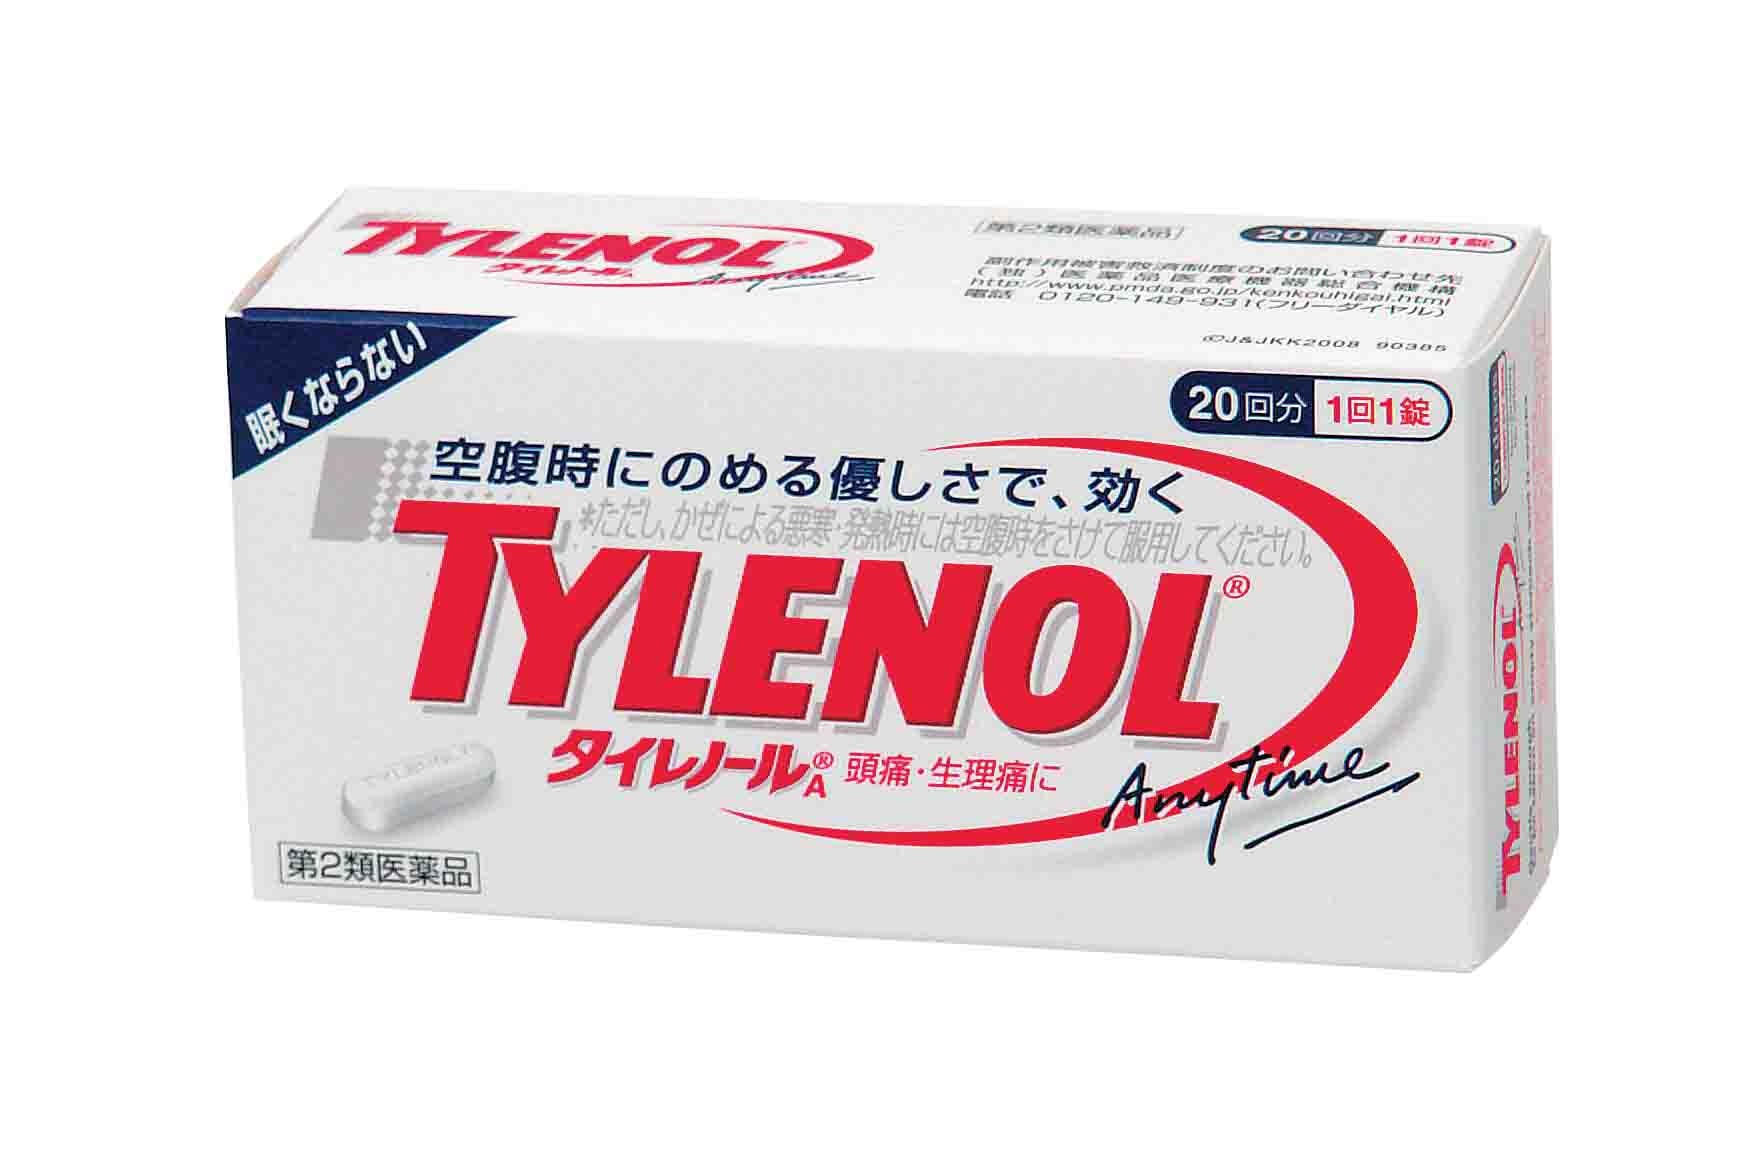 ☆【解熱鎮痛薬】(第２類医薬品) タイレノールA 20錠 | オフィスに備え ...